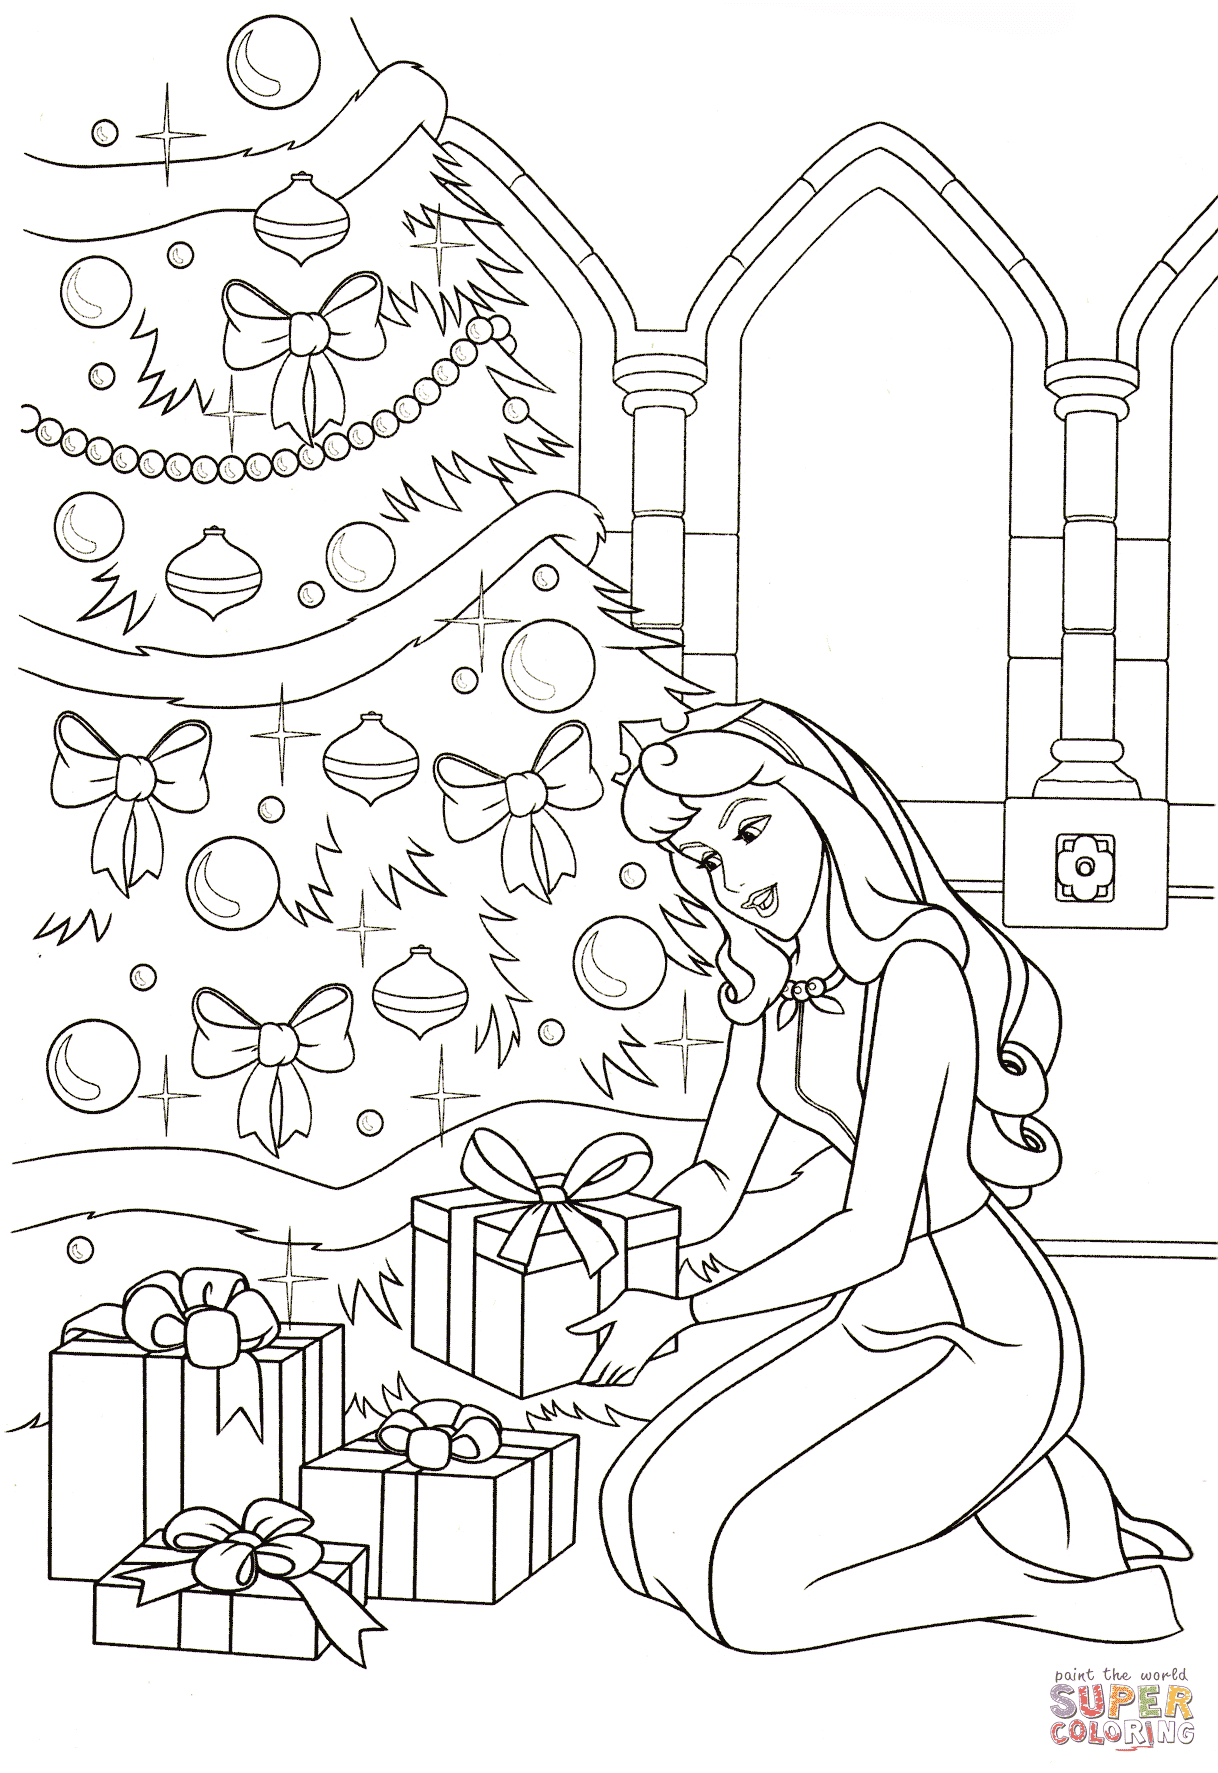 Aurora legt alle Geschenke unter den Baum aus Dornröschen